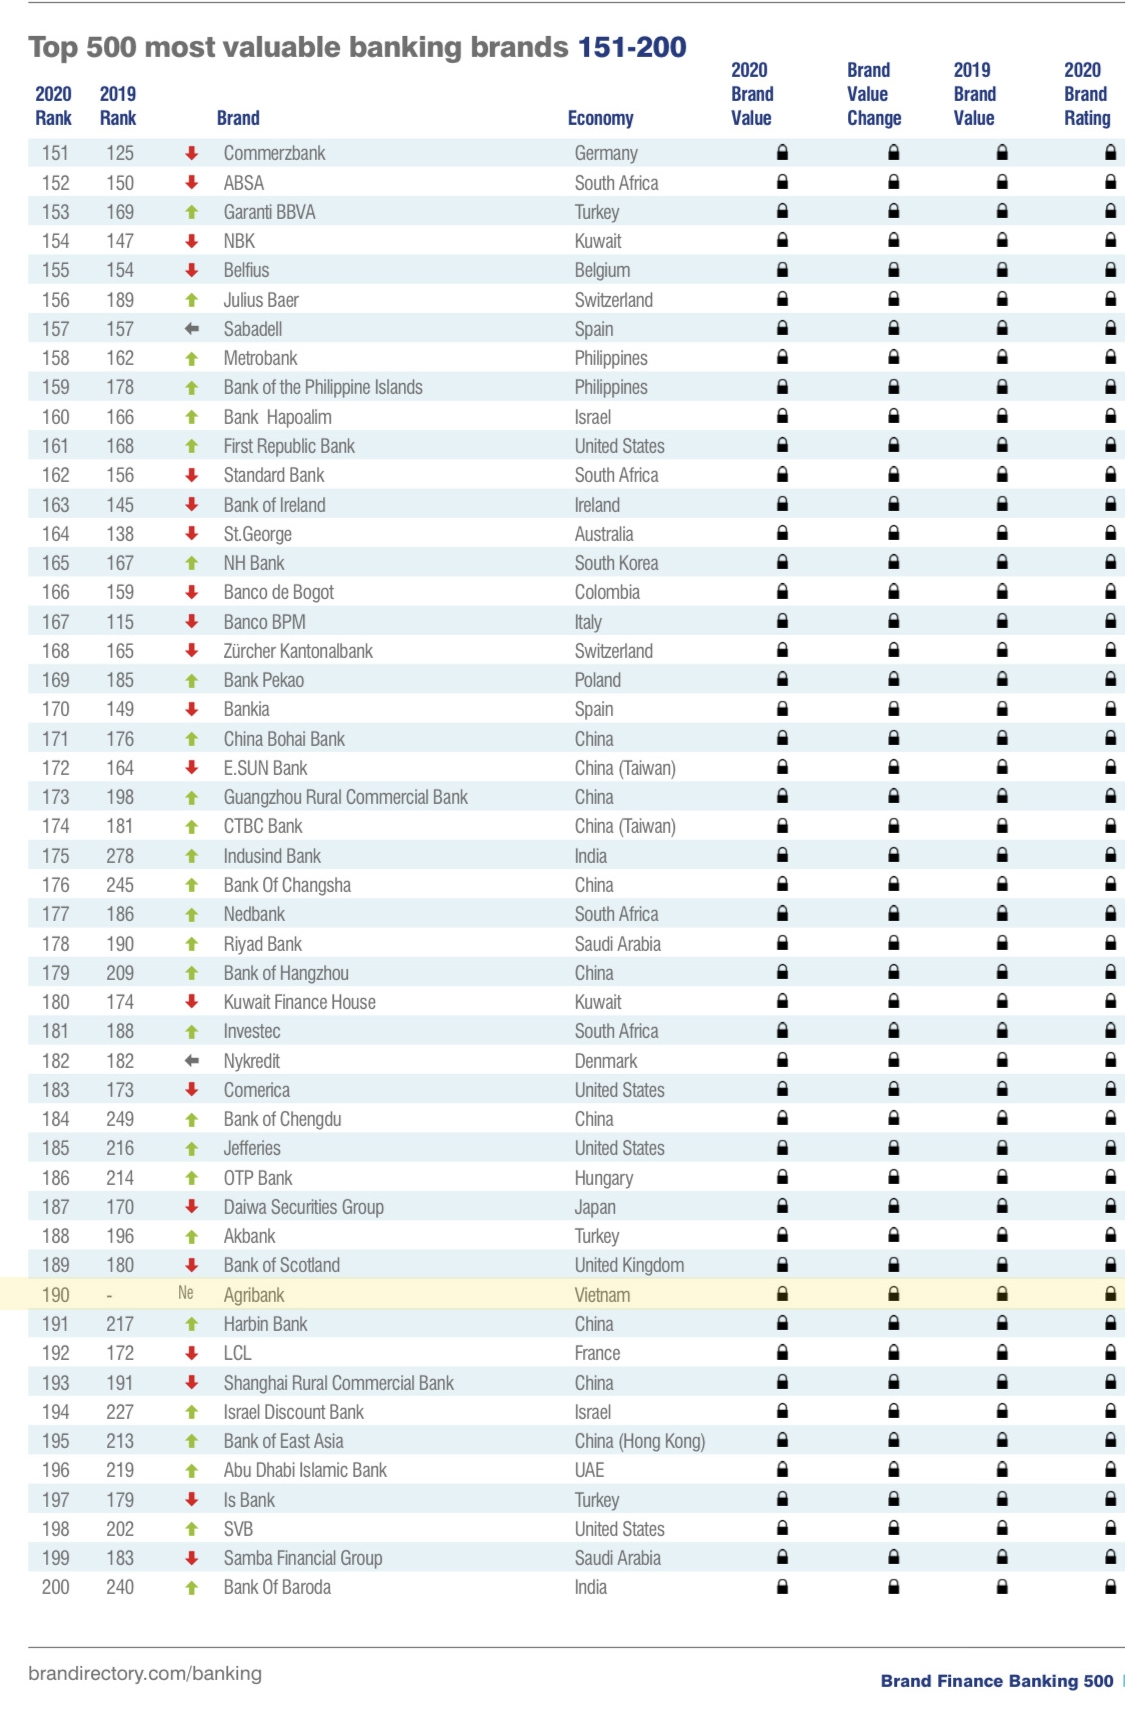 Agribank đứng thứ 190 tại bảng xếp hạng Brand Finance Banking 500